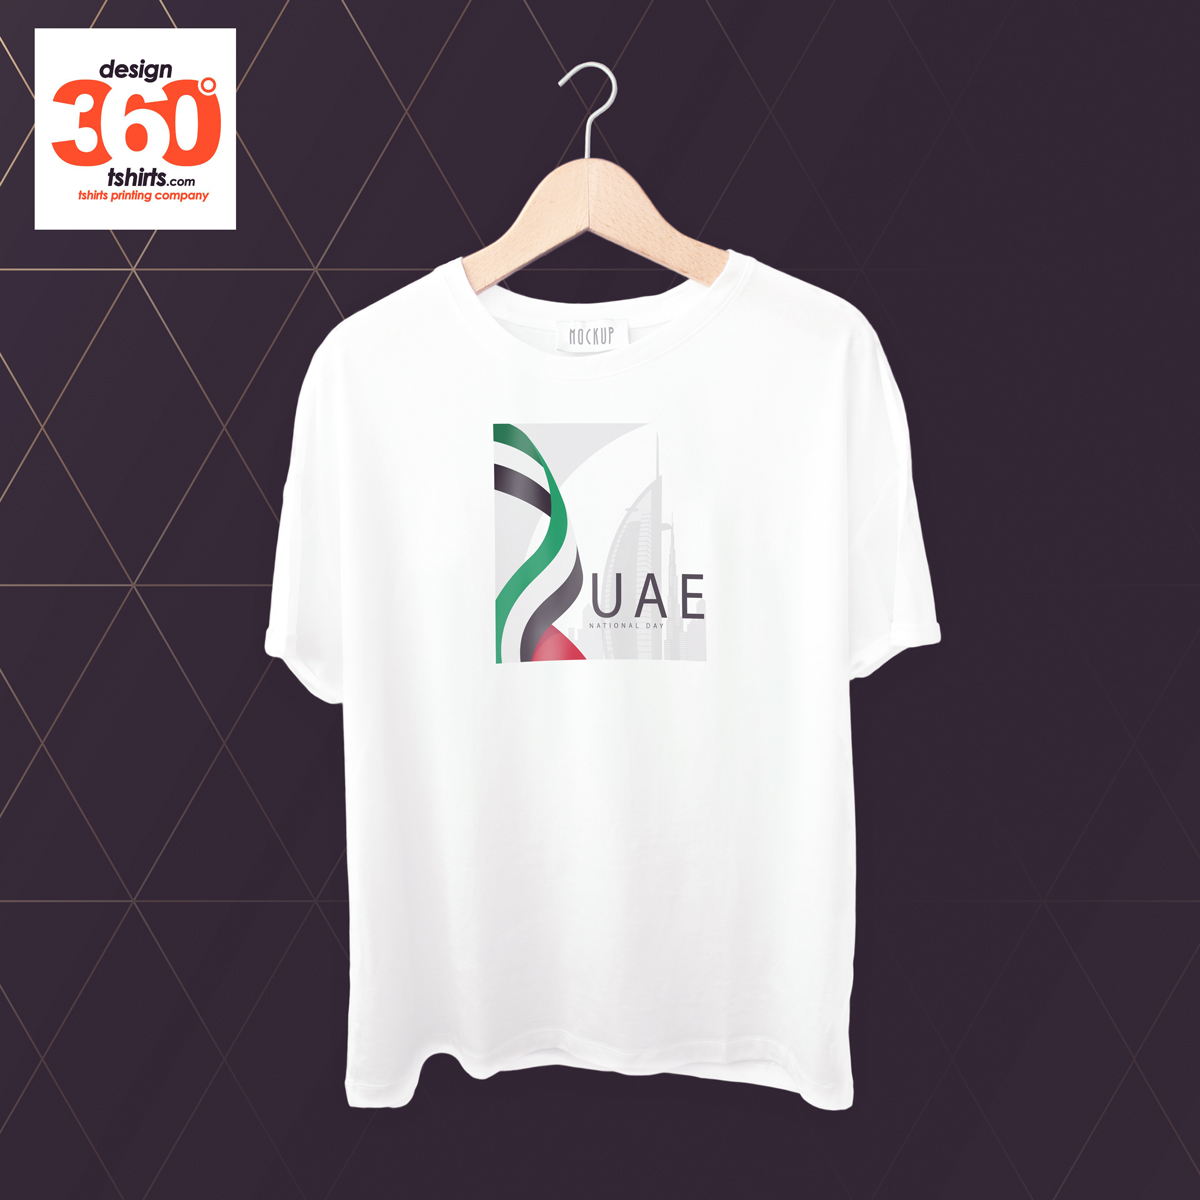 Tshirt Printing Dubai